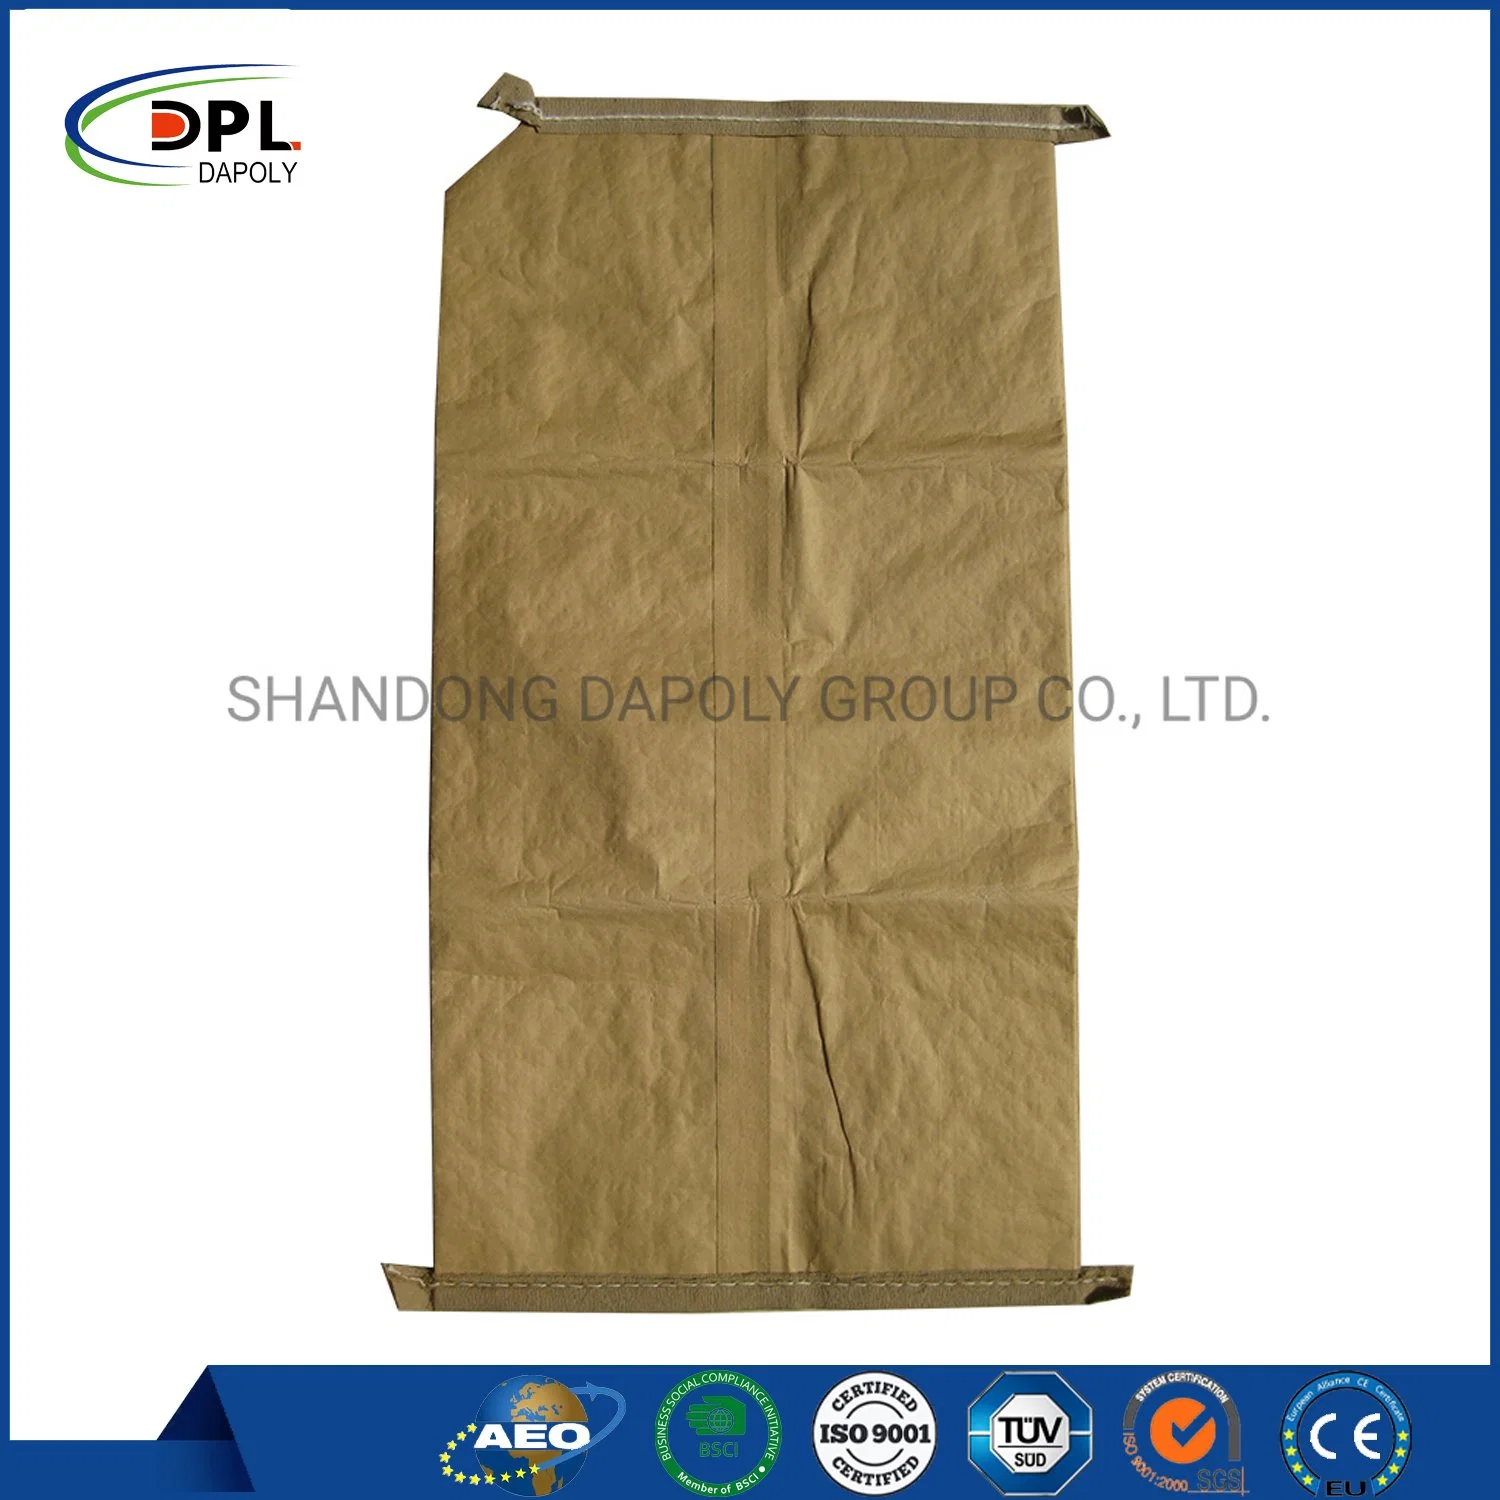 Accept Custom Logo Order 25kg and 50kg PP Plastic/Kraft Paper Block Bottom Valve Cement Bag Cheap Price Global Hot Sale